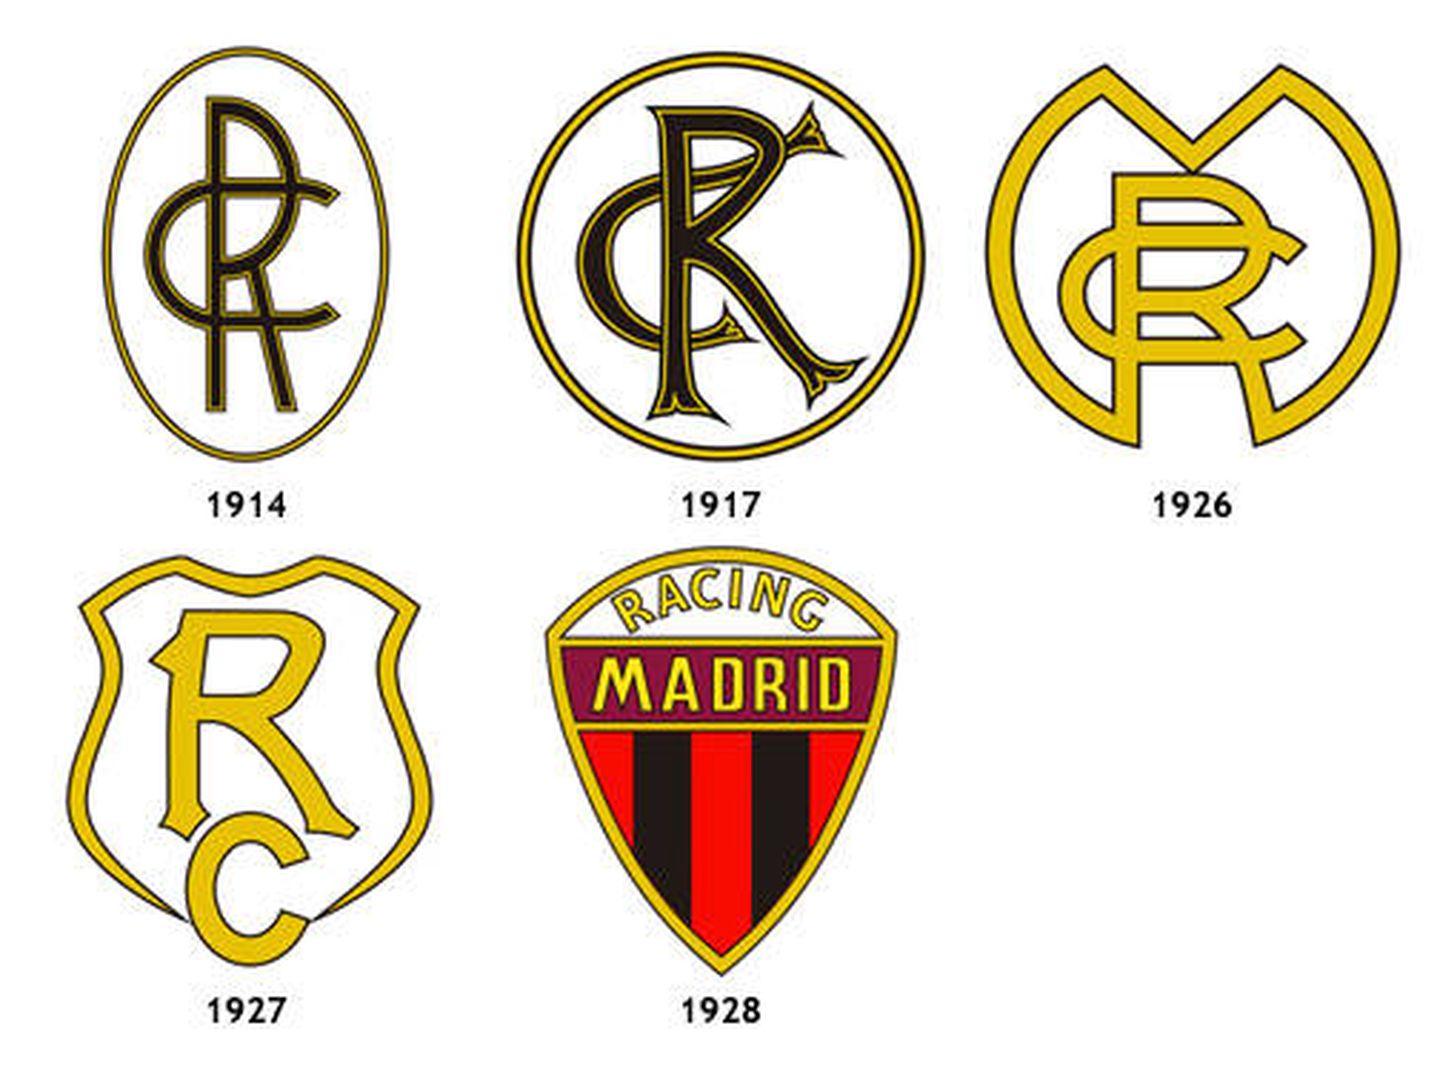 Escudos históricos del Racing de Madrid. (Futbolteca)